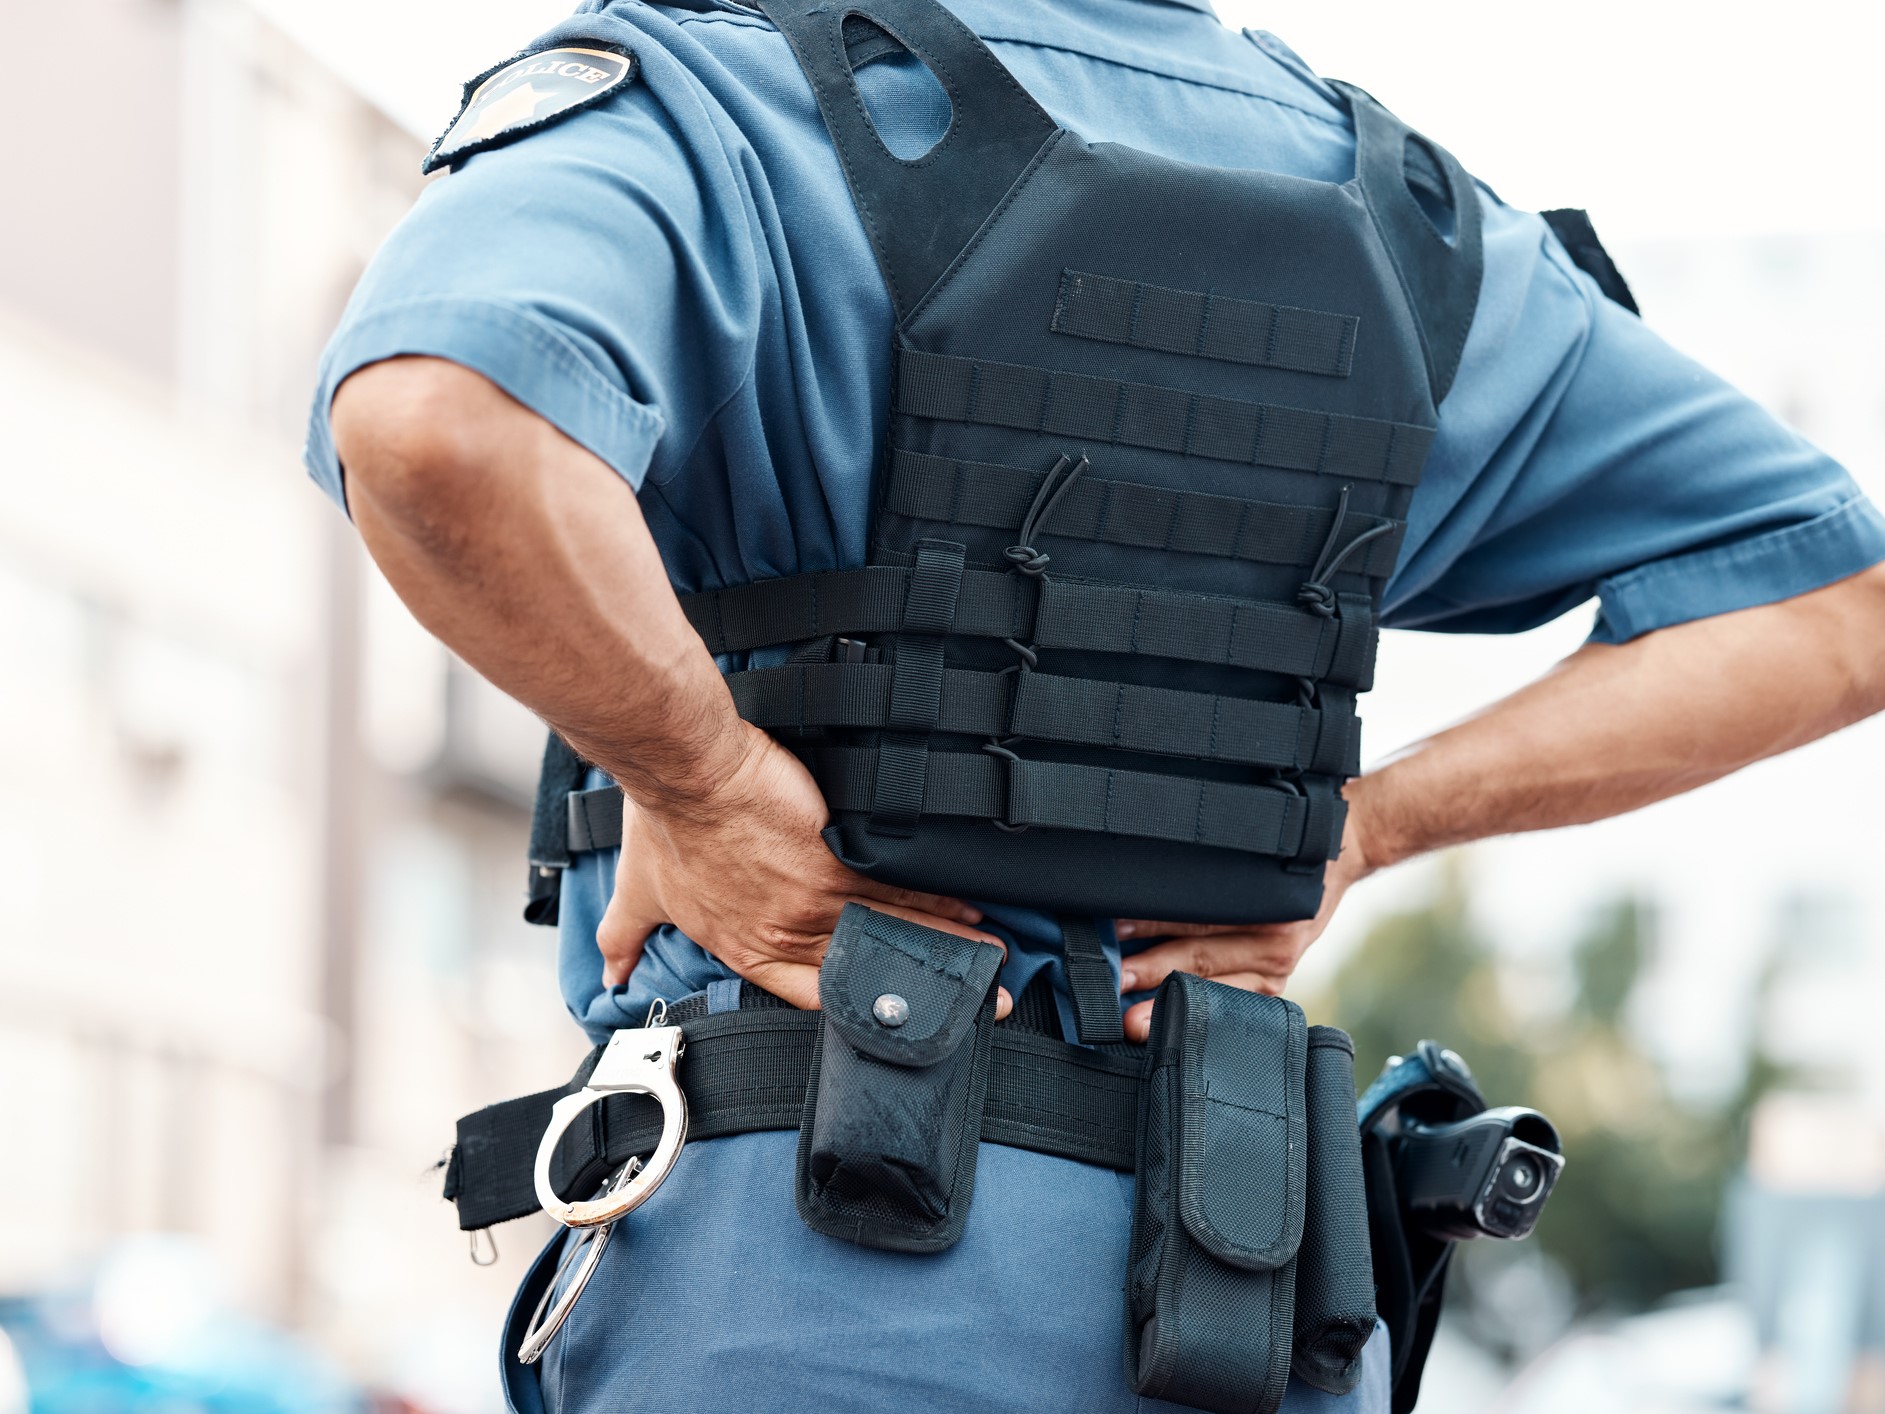 law enforcement back pain